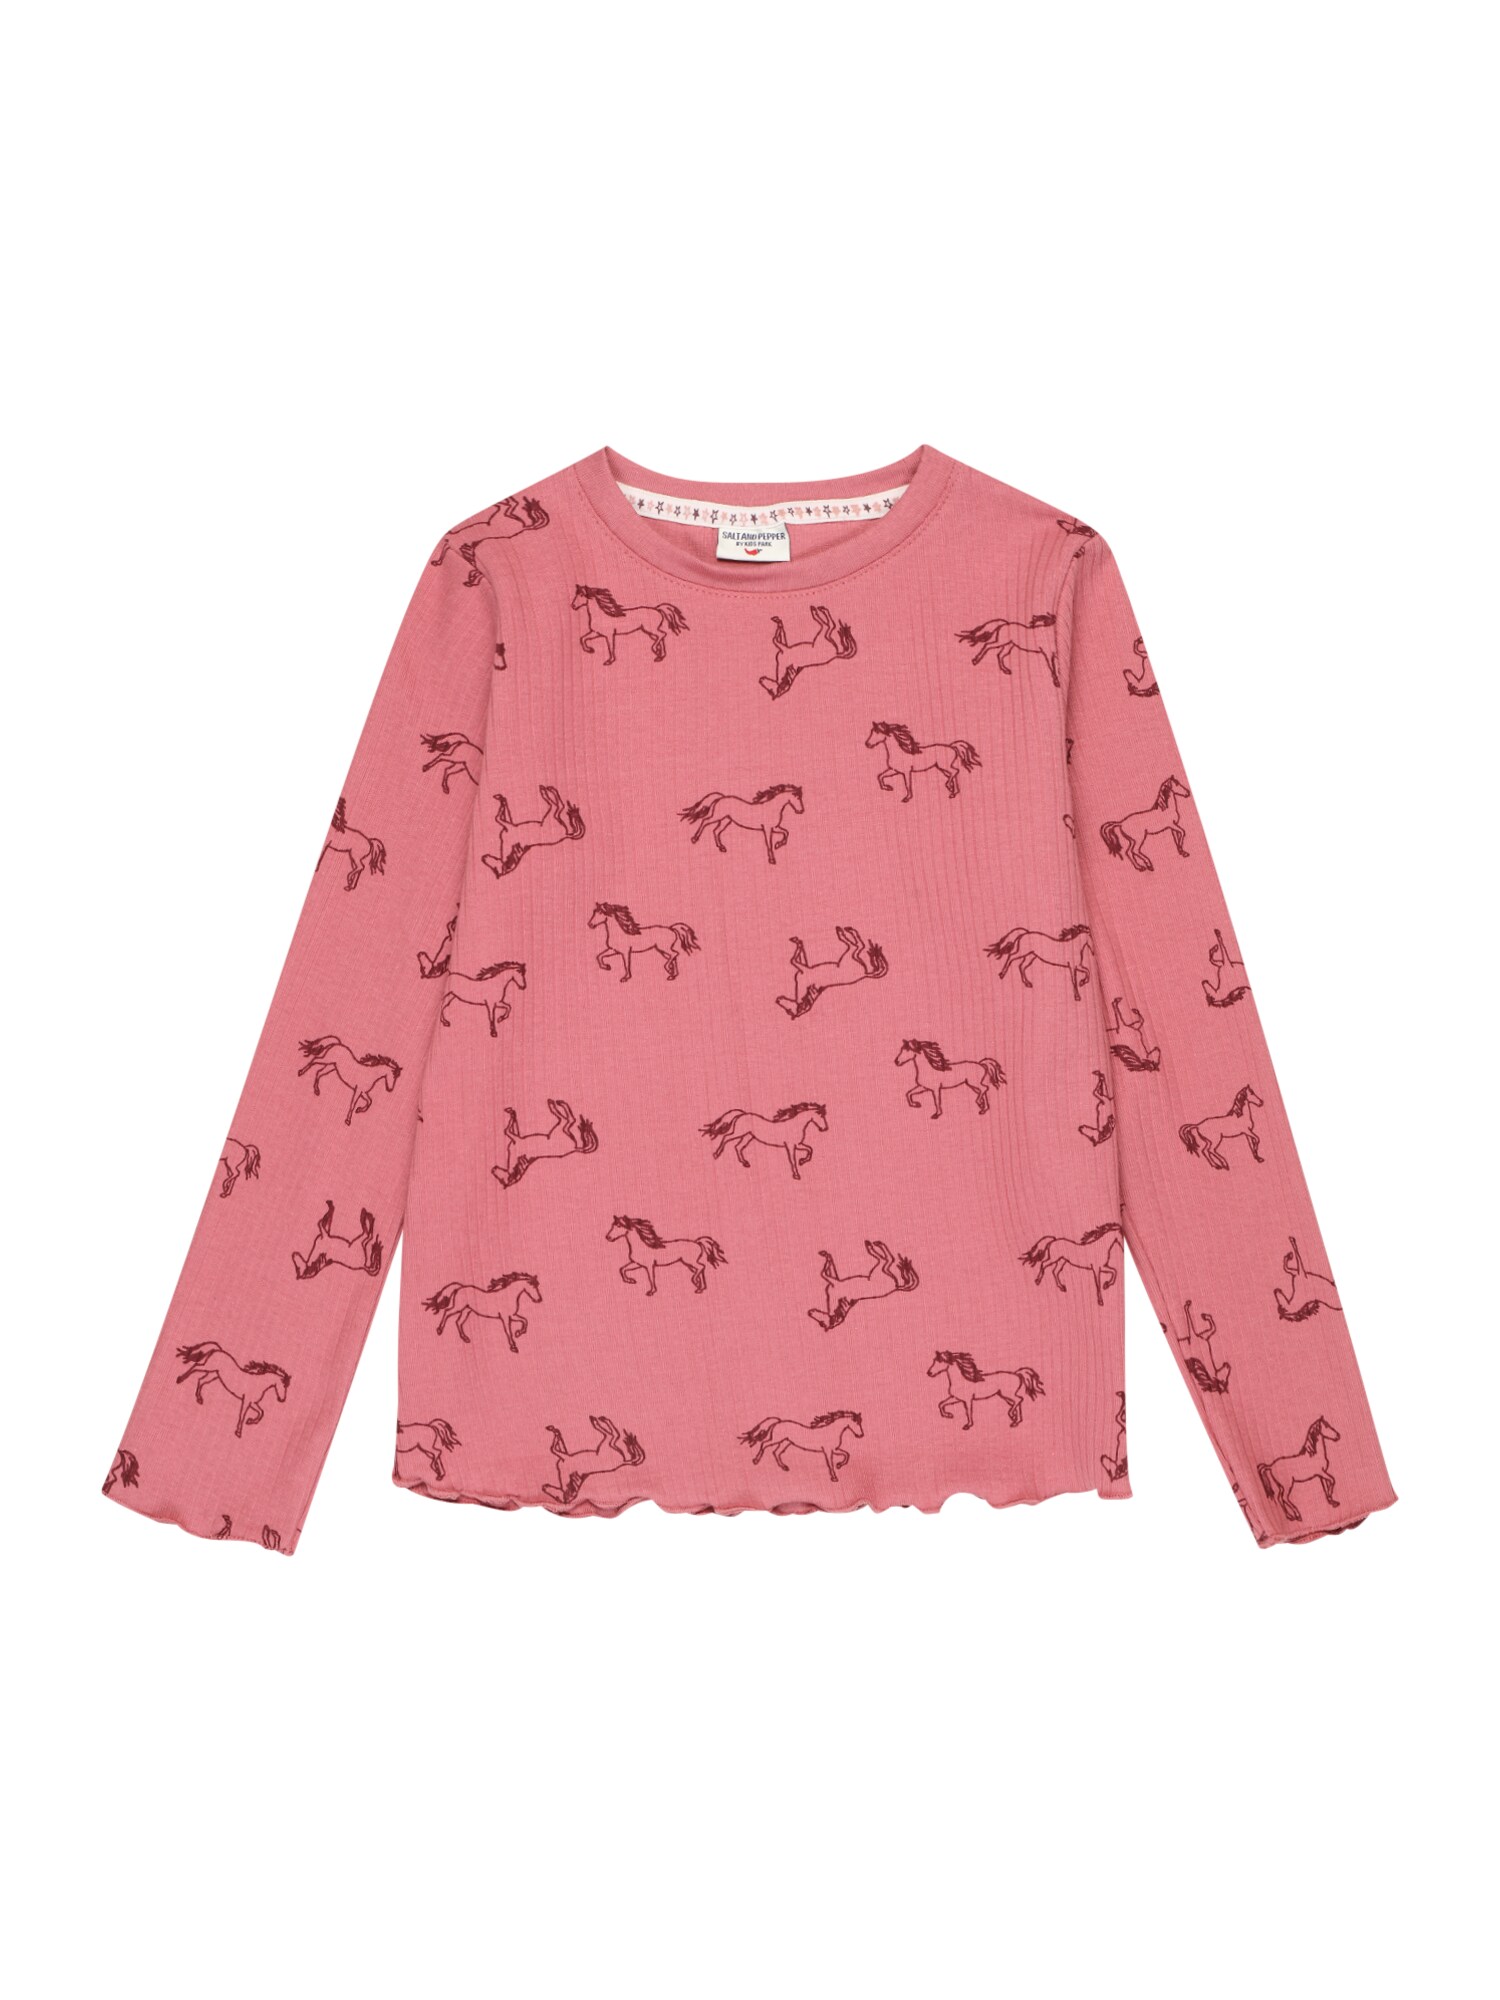 SALT AND PEPPER Marškinėliai 'Wild Horses' ryškiai rožinė spalva / burgundiško vyno spalva